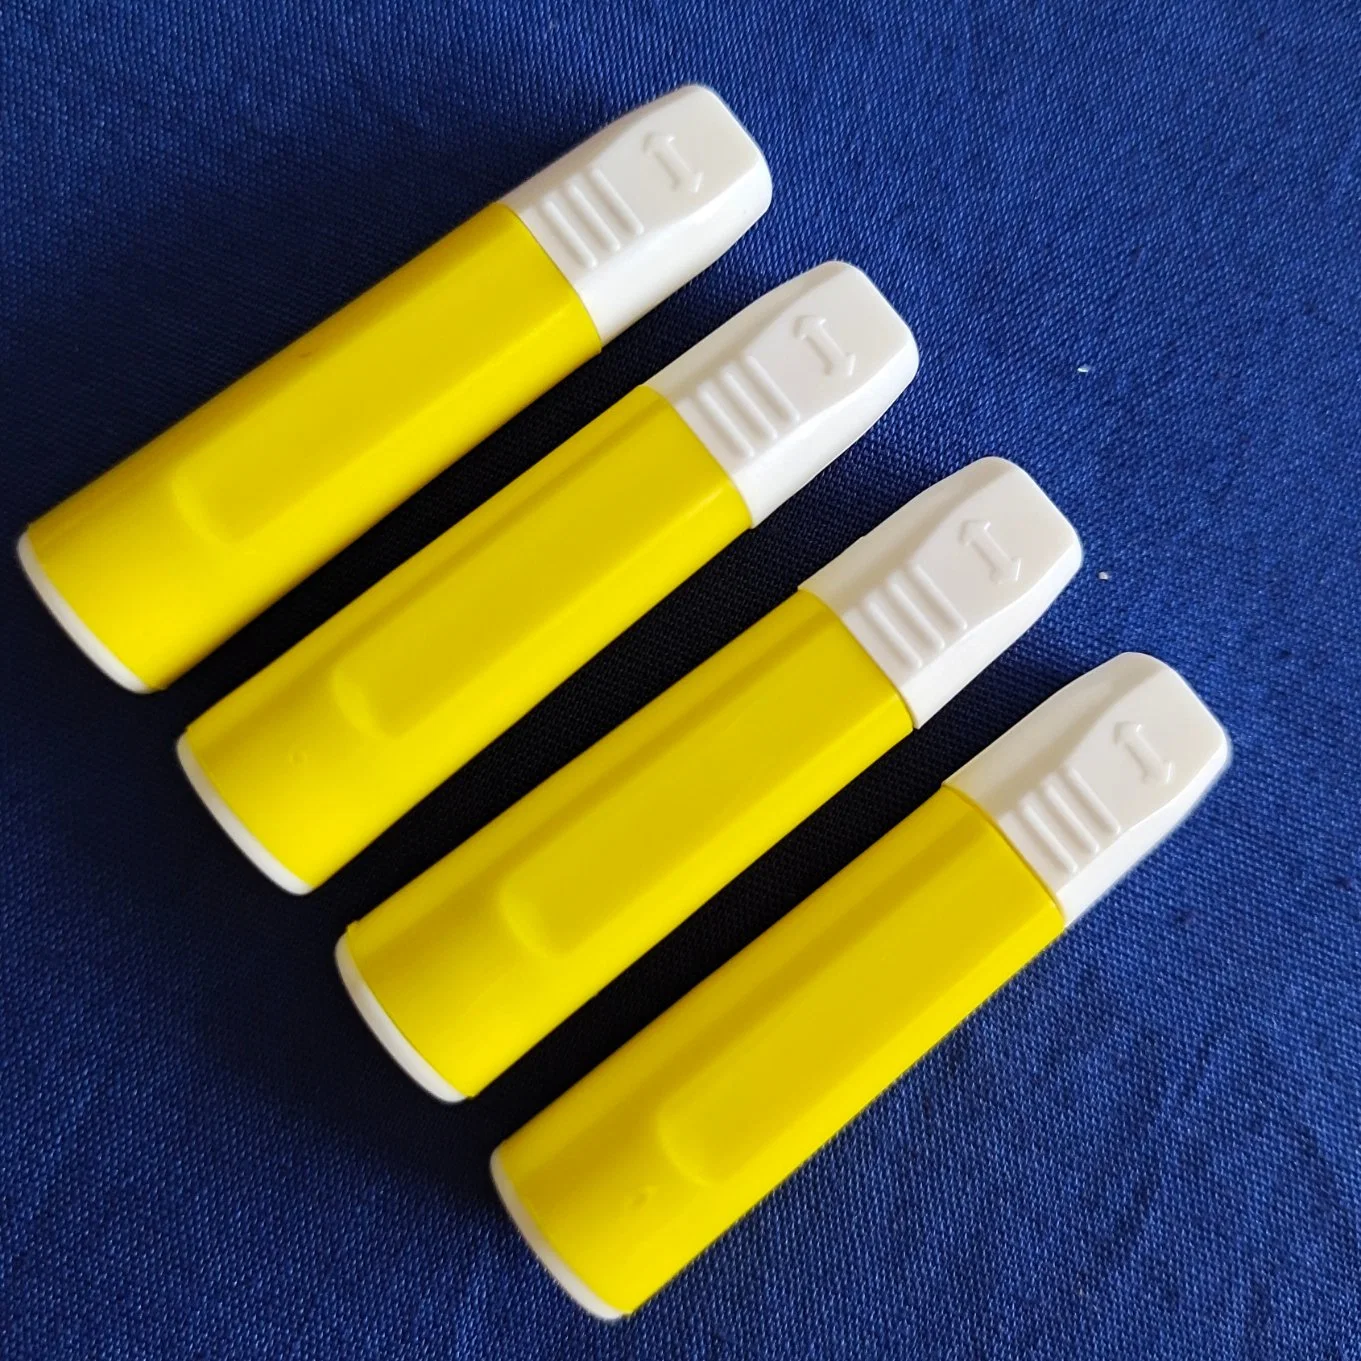 مجموعة طيف الدم الشعرية ذات النمط الذي يمكن التخلص منه مجموعة المسك الطبية المسك إبرة للاستخدام في ديابيت، علامة CE، توصيل قصير للاستخدام الفردي، علامة CE ISO، 21g-30g